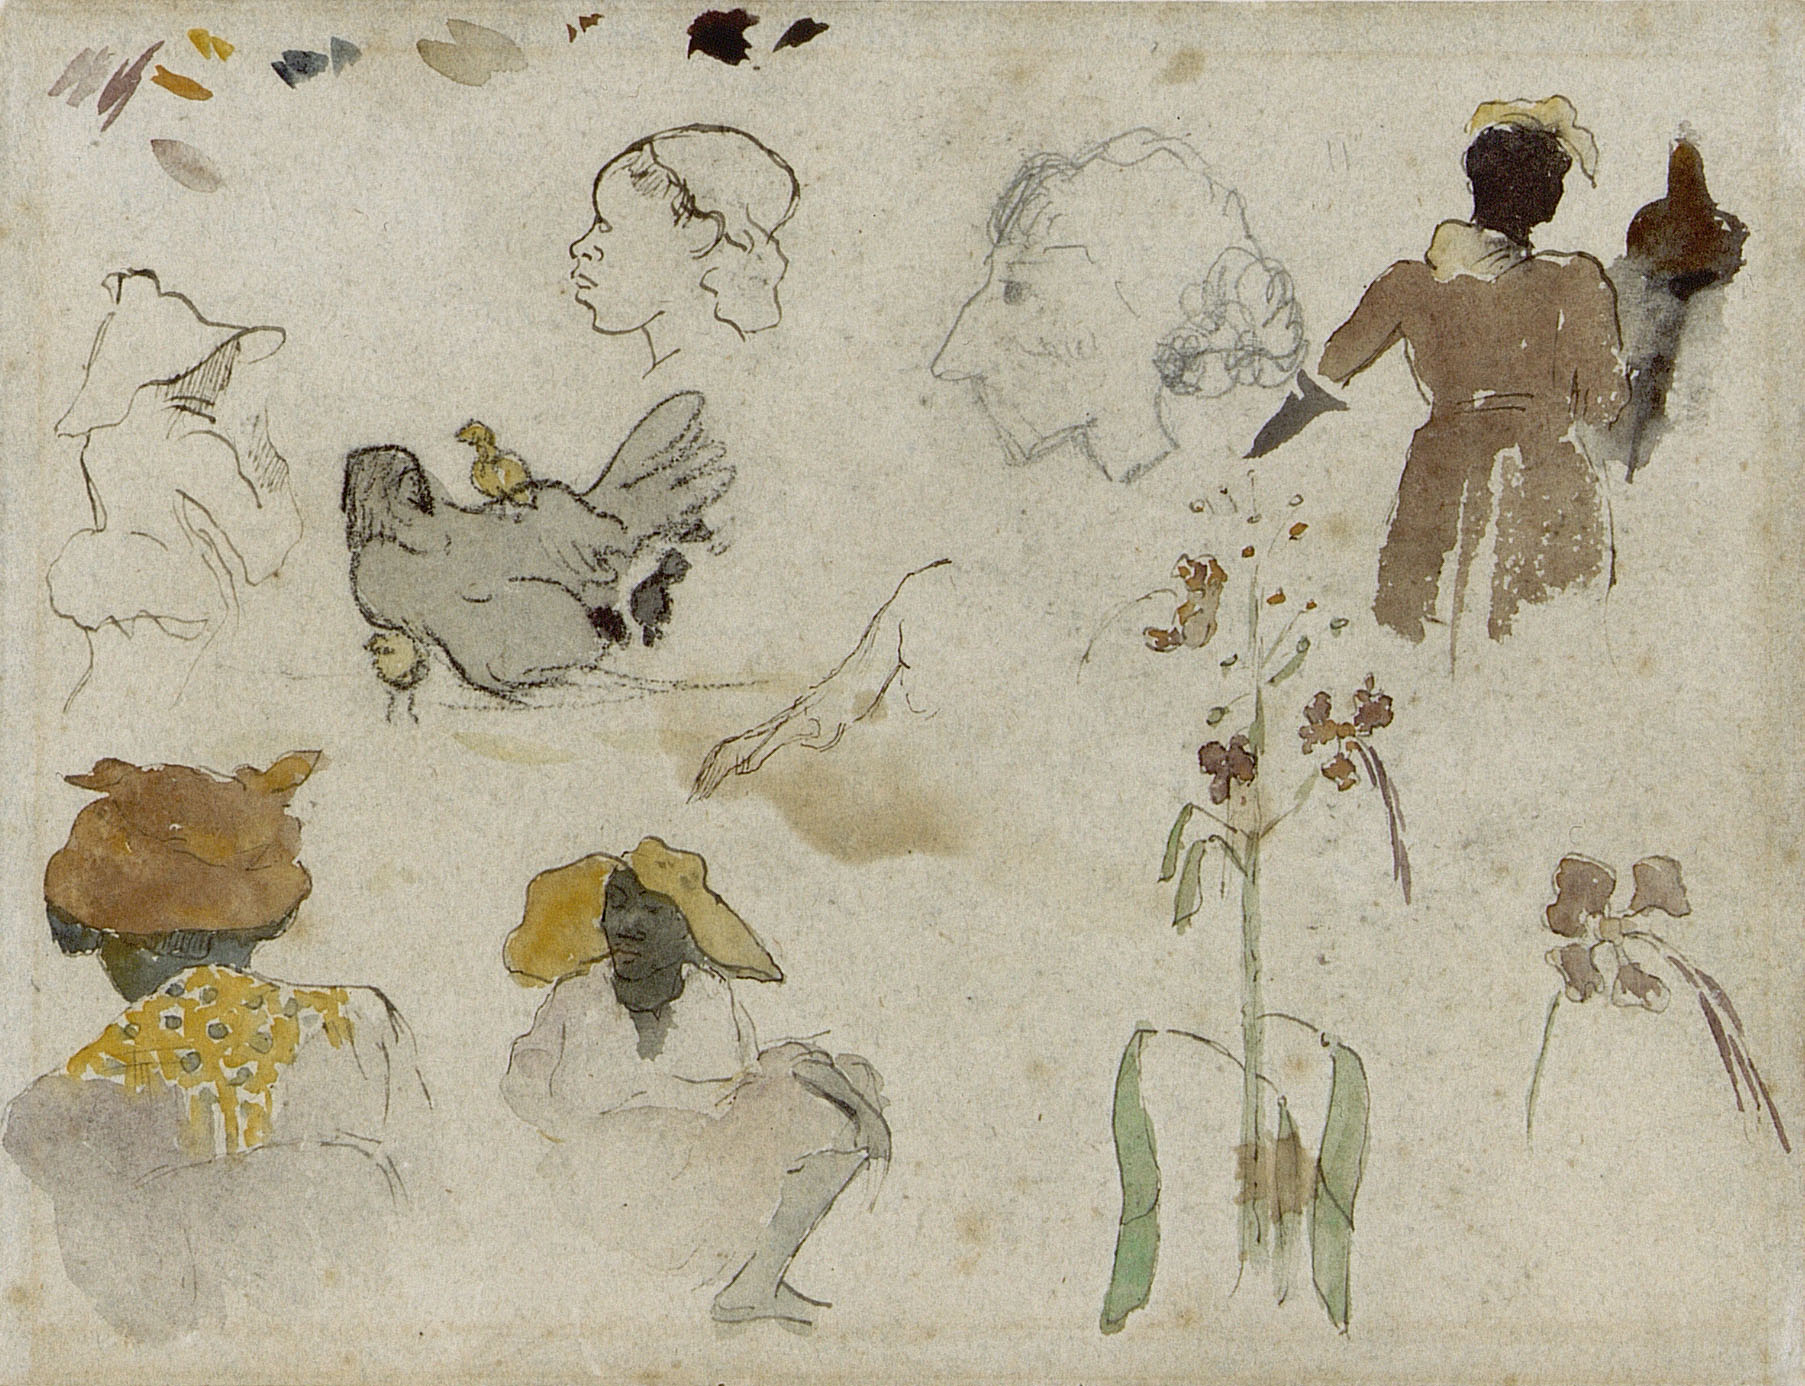 Szkic kilku postaci, kwiatów i zwierząt by Paul Gauguin - 1887 - 20.4 x 27 cm 